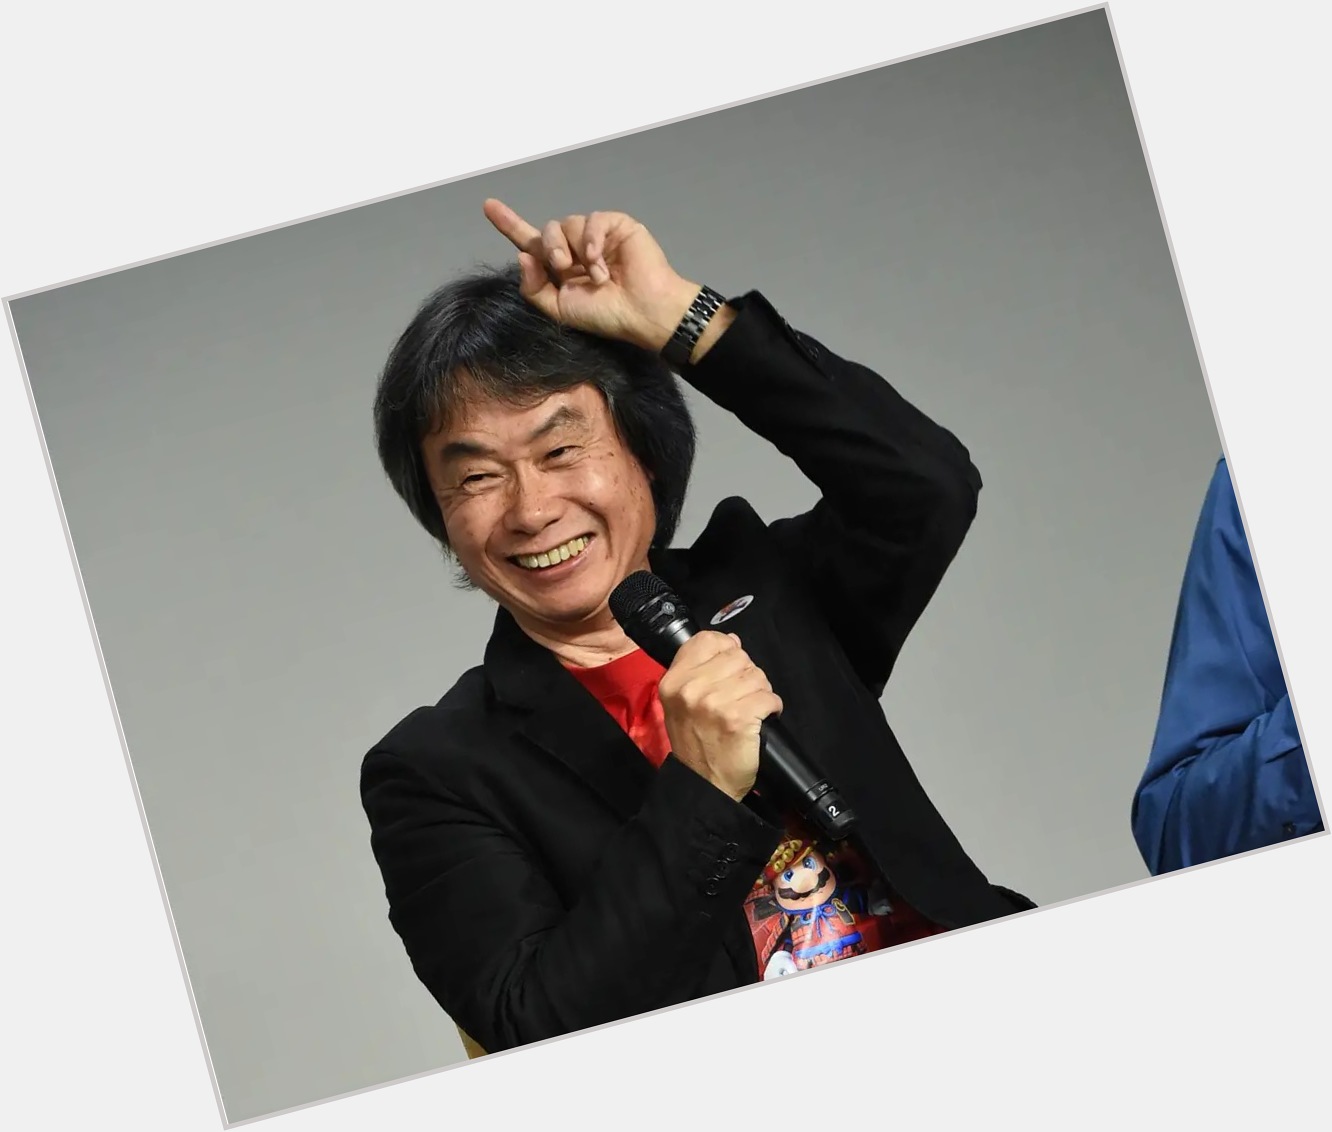 Happy birthday to the legend Shigeru Miyamoto! 